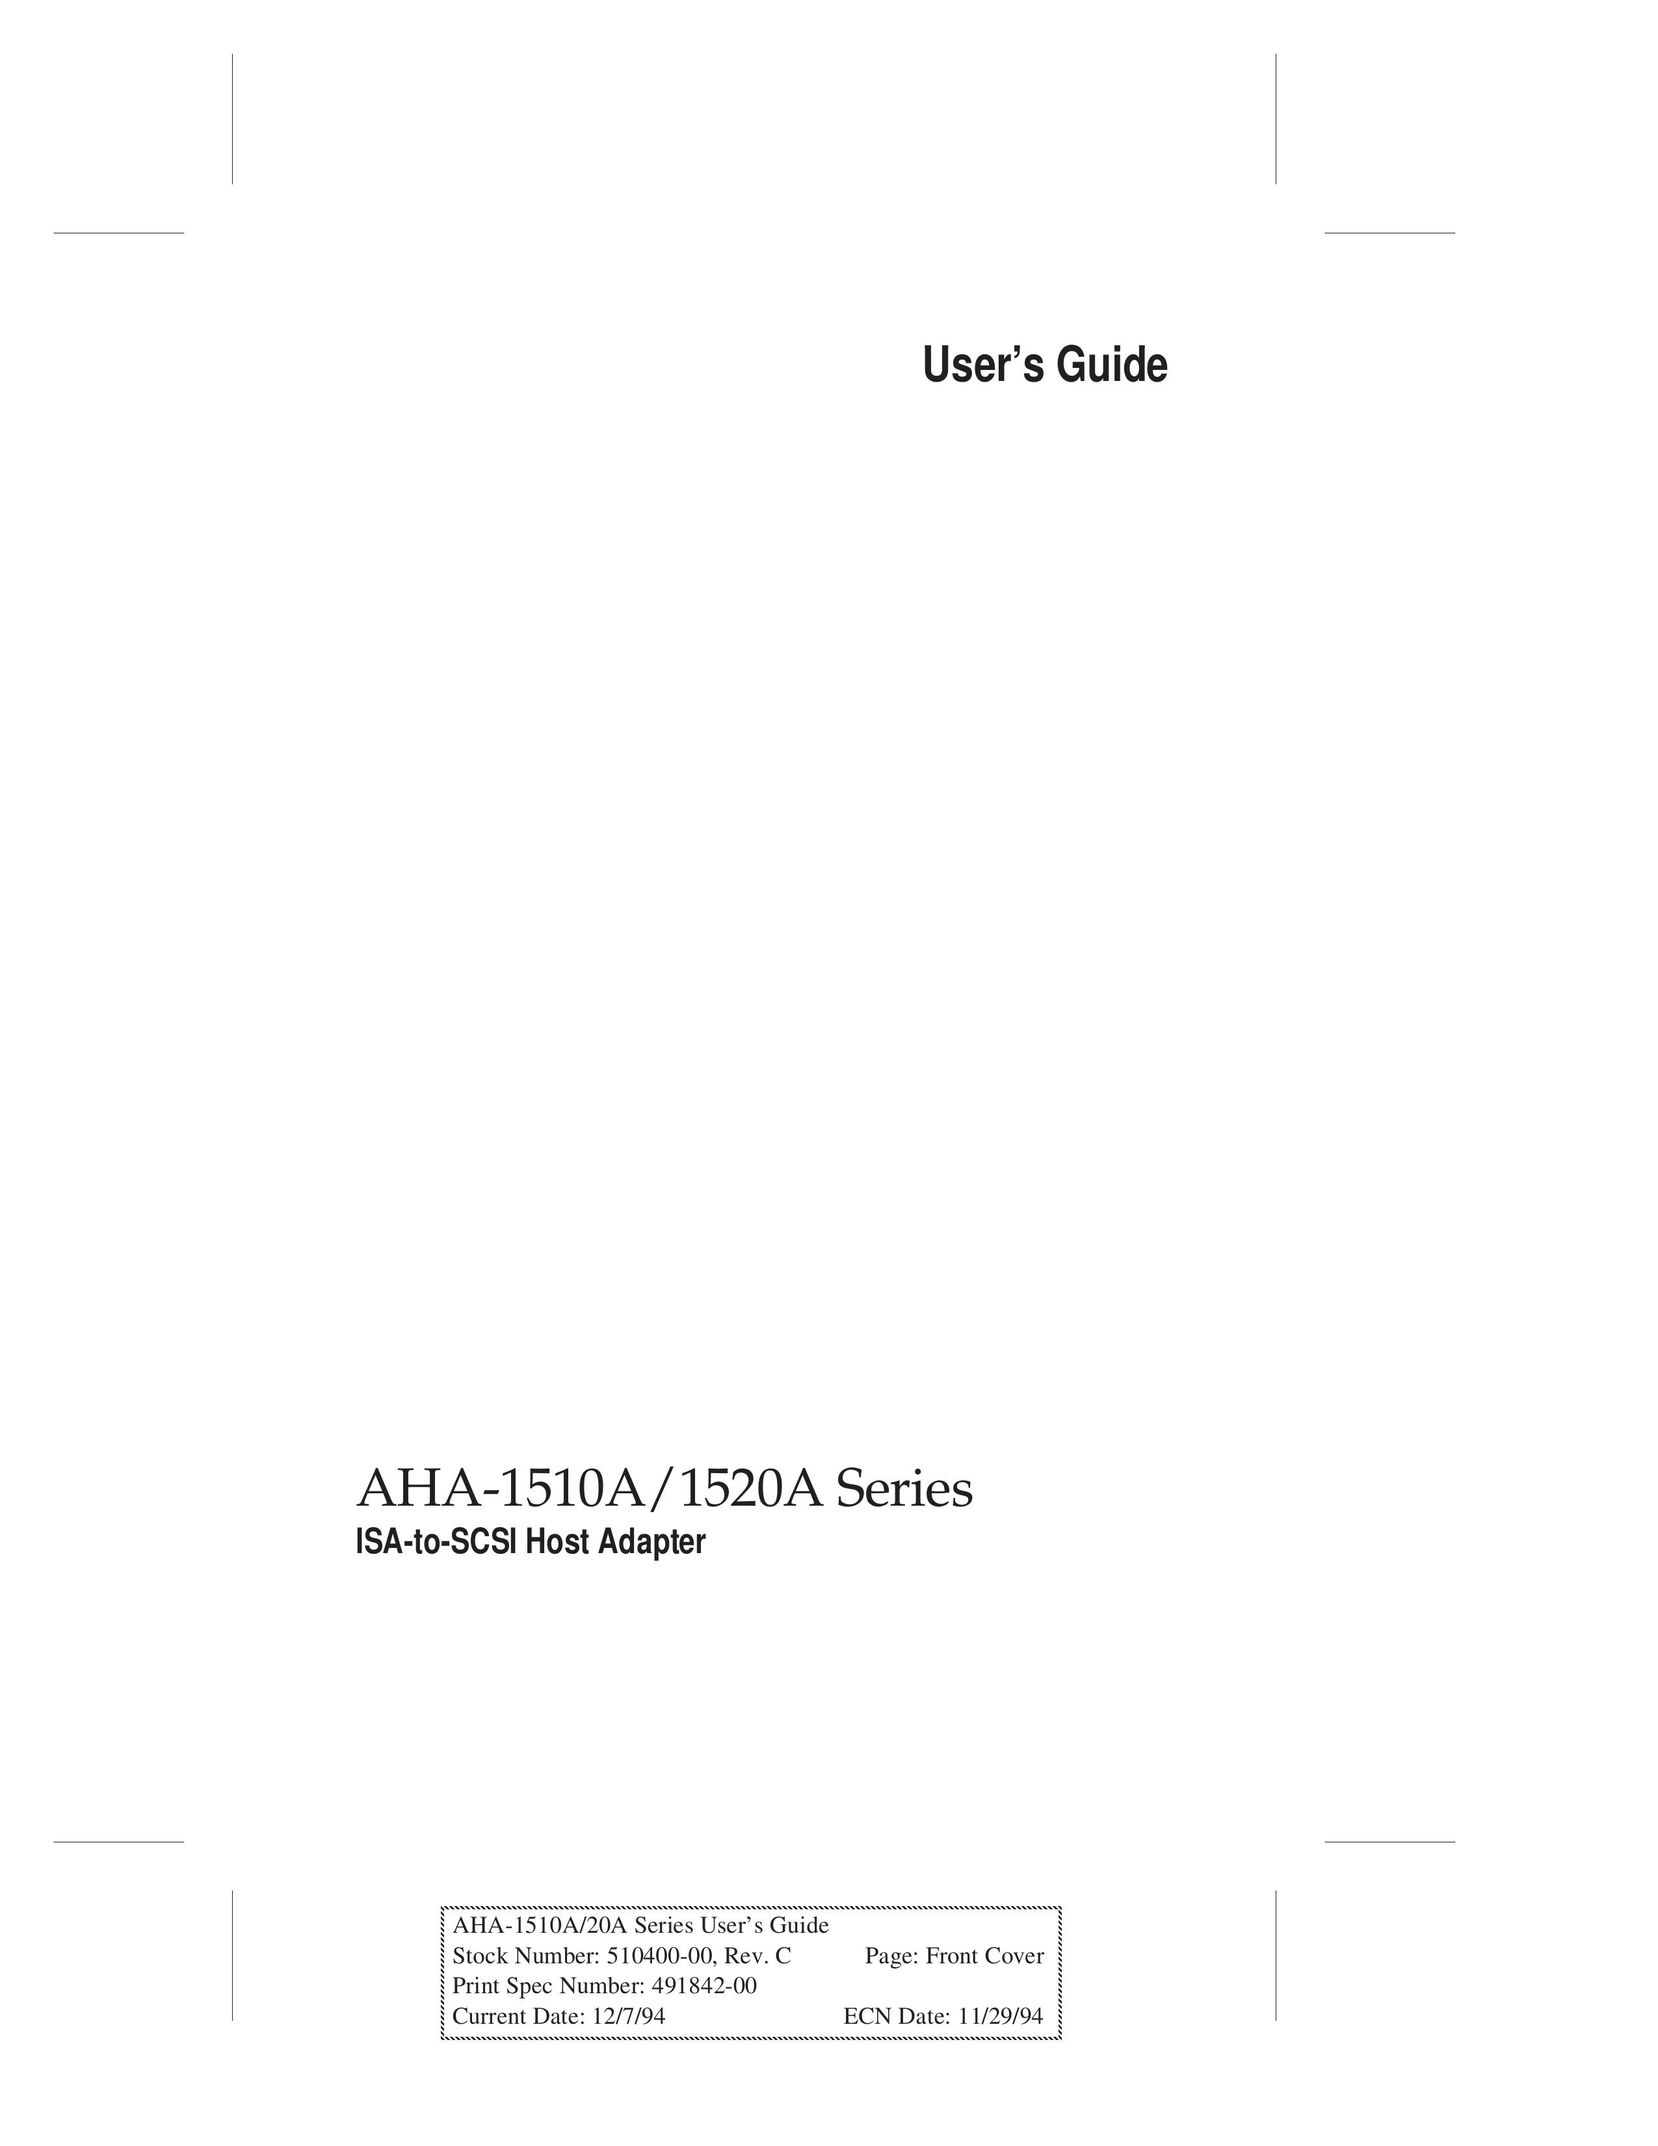 Adaptec AHA-1510A Network Card User Manual